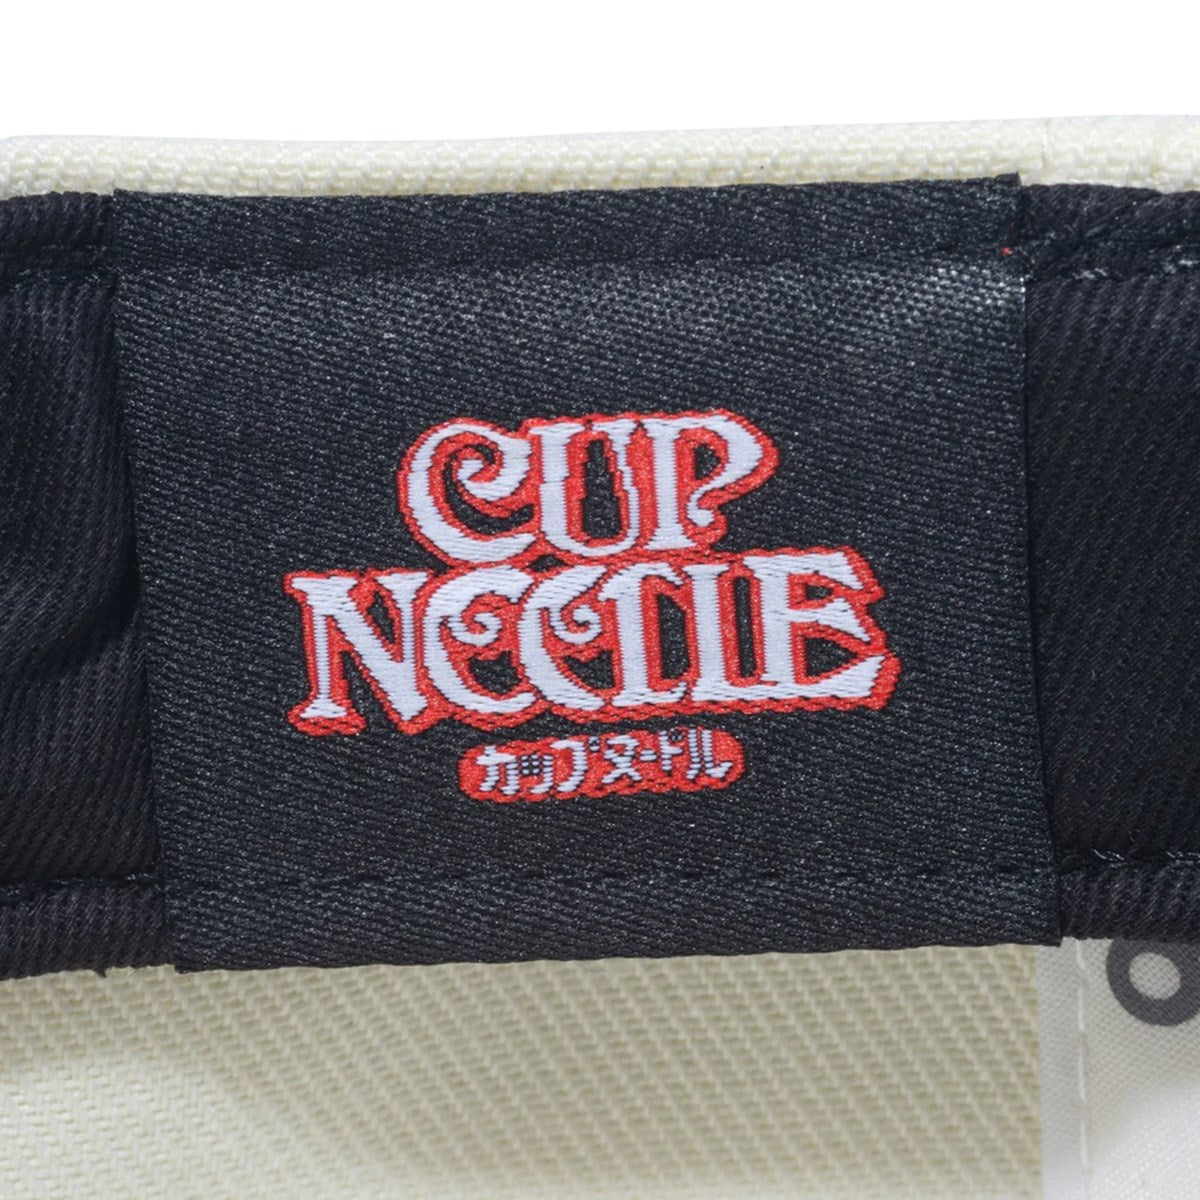 NEW ERA × CUP NOODLE - 9FIFTY CUP NOODLE REG CRM【14125283】